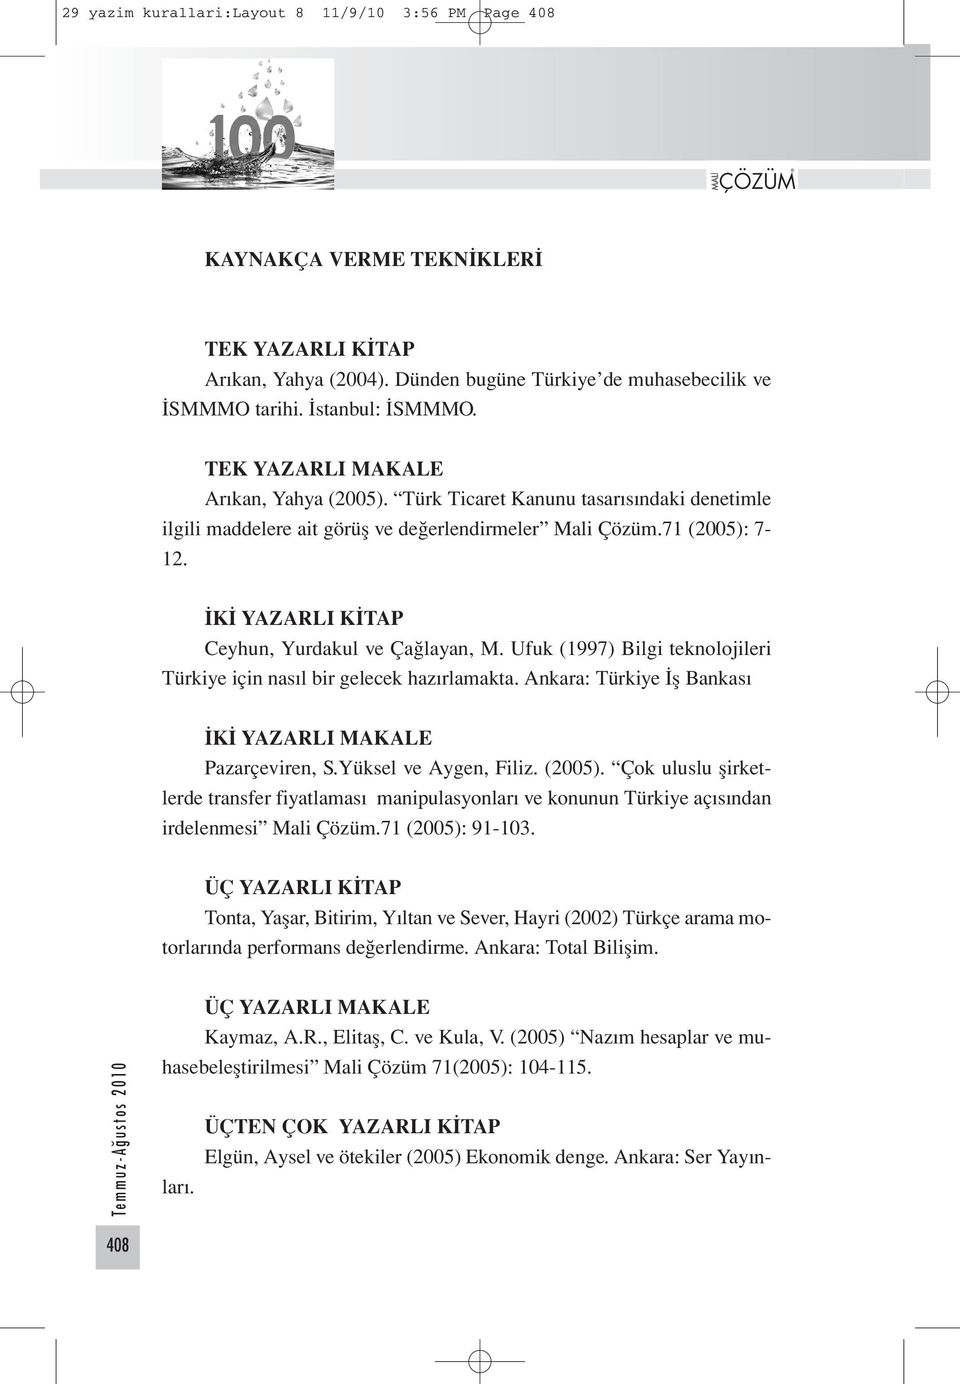 İKİ YAZARLI KİTAP Ceyhun, Yurdakul ve Çağlayan, M. Ufuk (1997) Bilgi teknolojileri Türkiye için nasıl bir gelecek hazırlamakta. Ankara: Türkiye İş Bankası İKİ YAZARLI MAKALE Pazarçeviren, S.